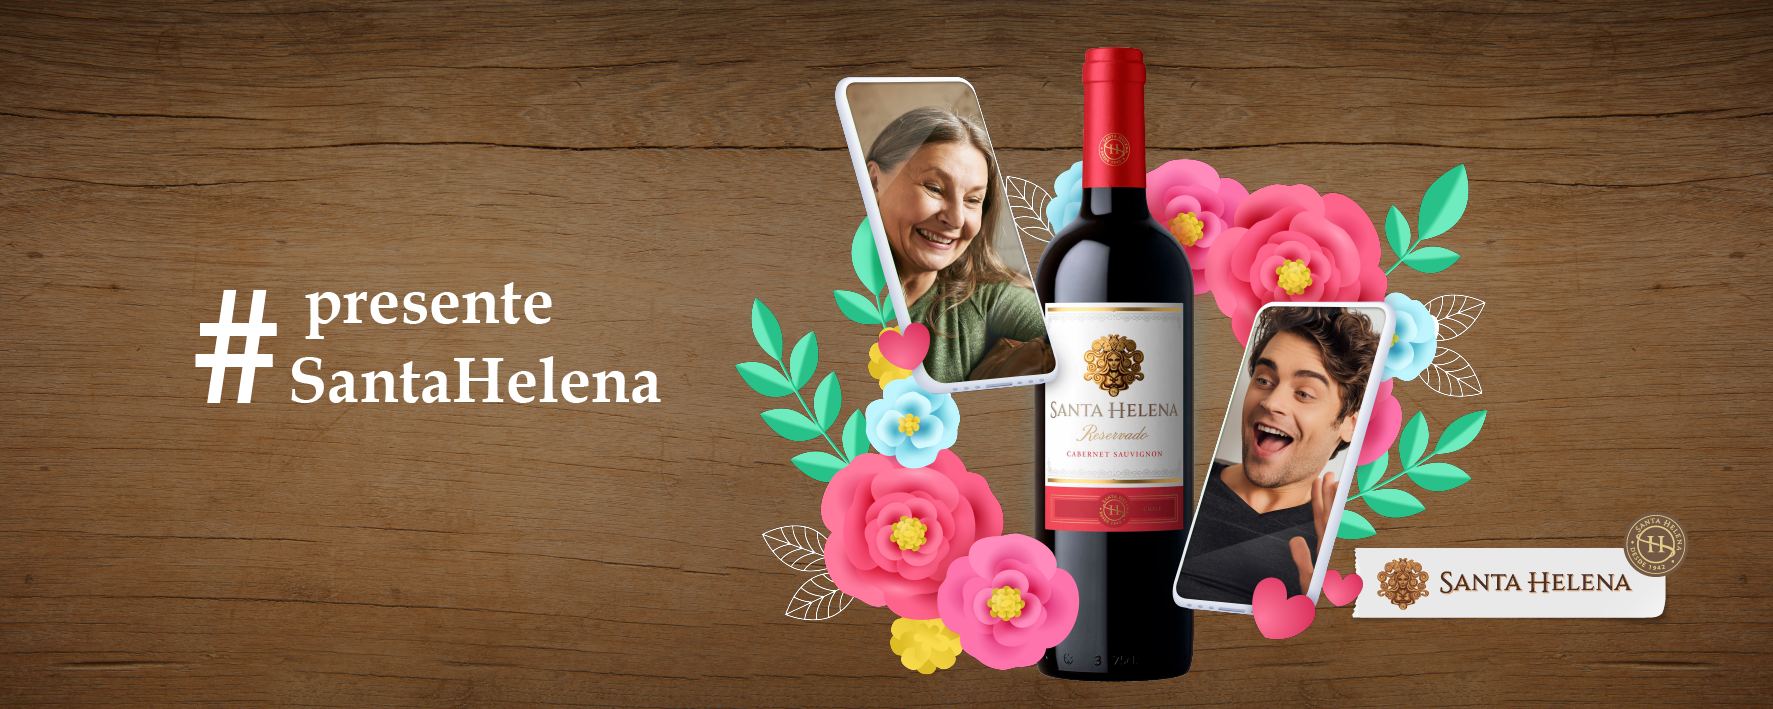 RPMA cria campanha de Dia das Mães para Viña Santa Helena